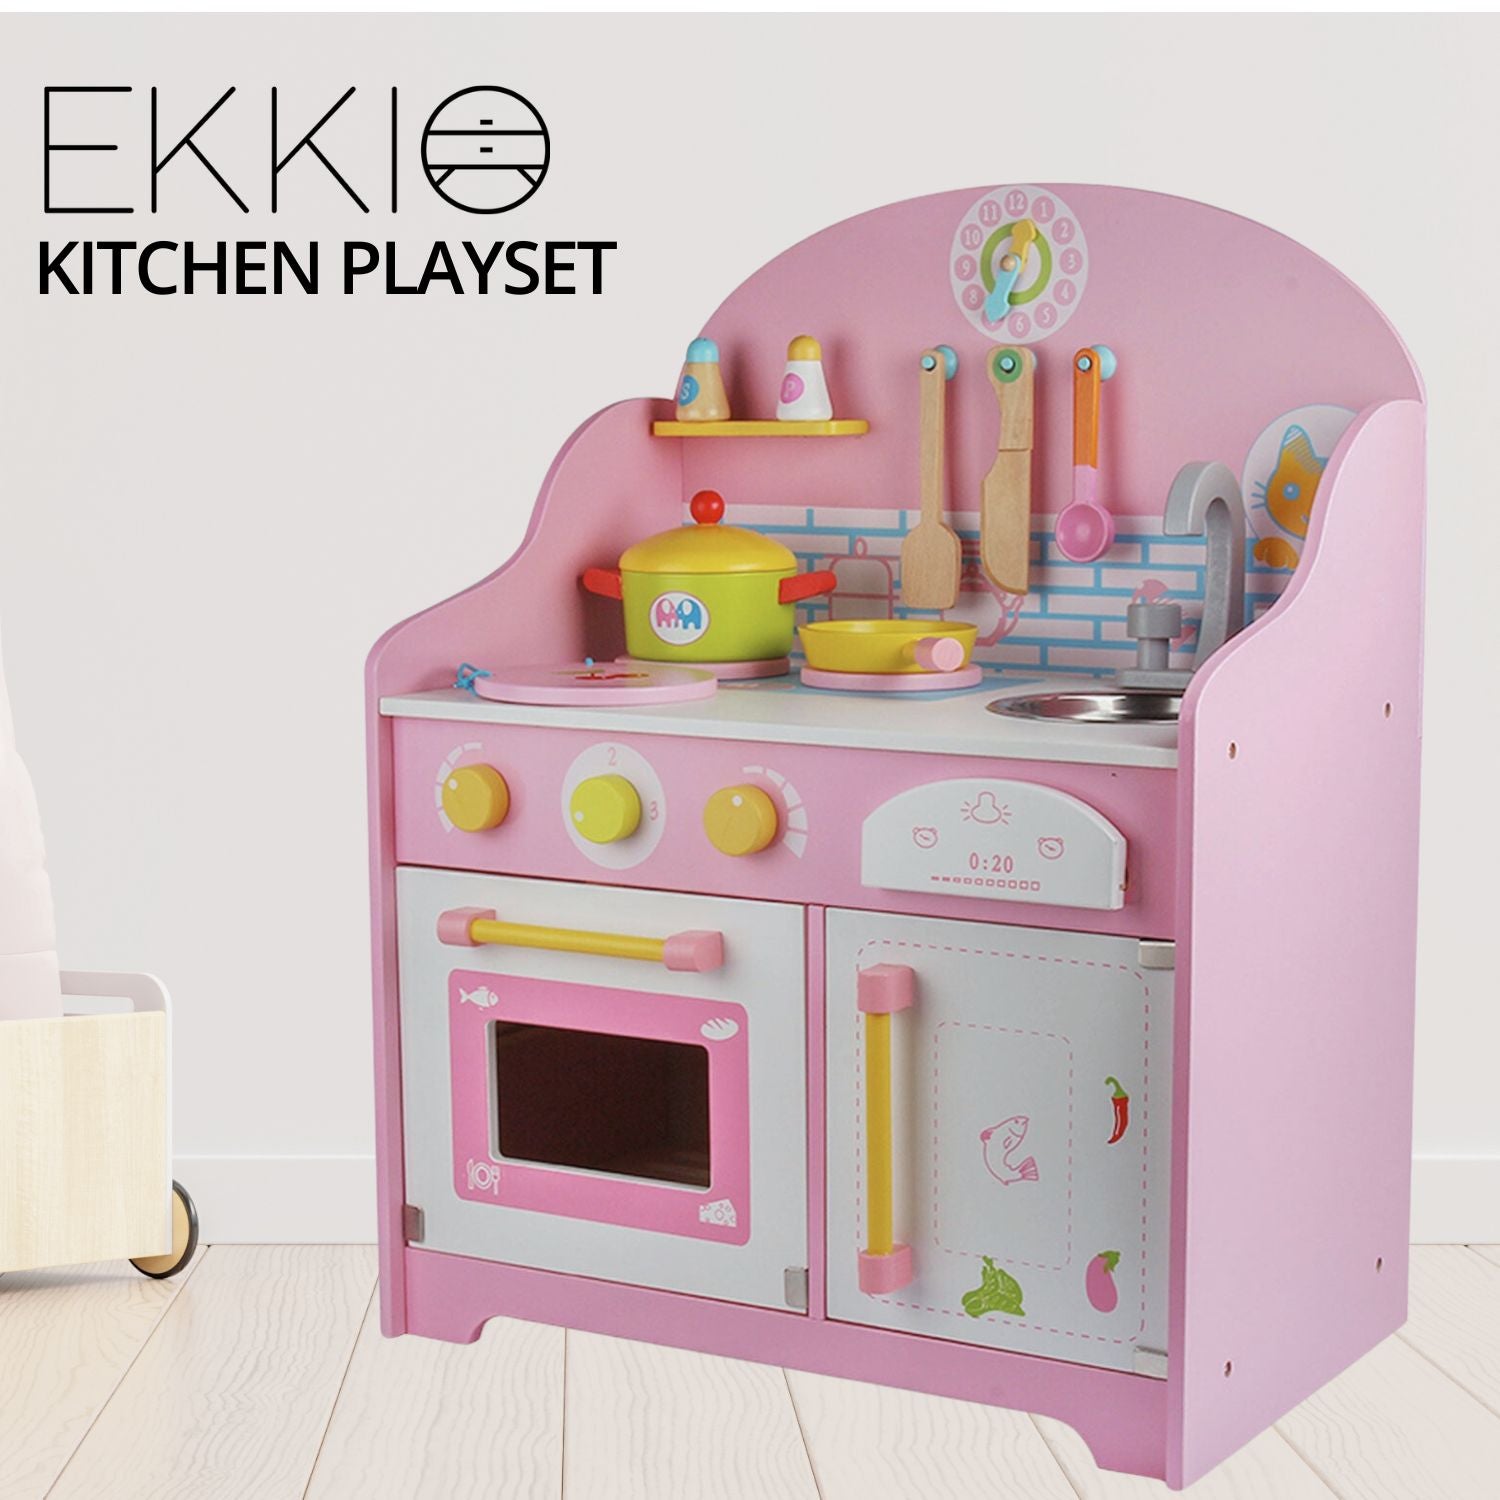 EKKIO Wooden Kitchen Playset for Kids with Clock (Japanese Style Kitchen Set, Pink)